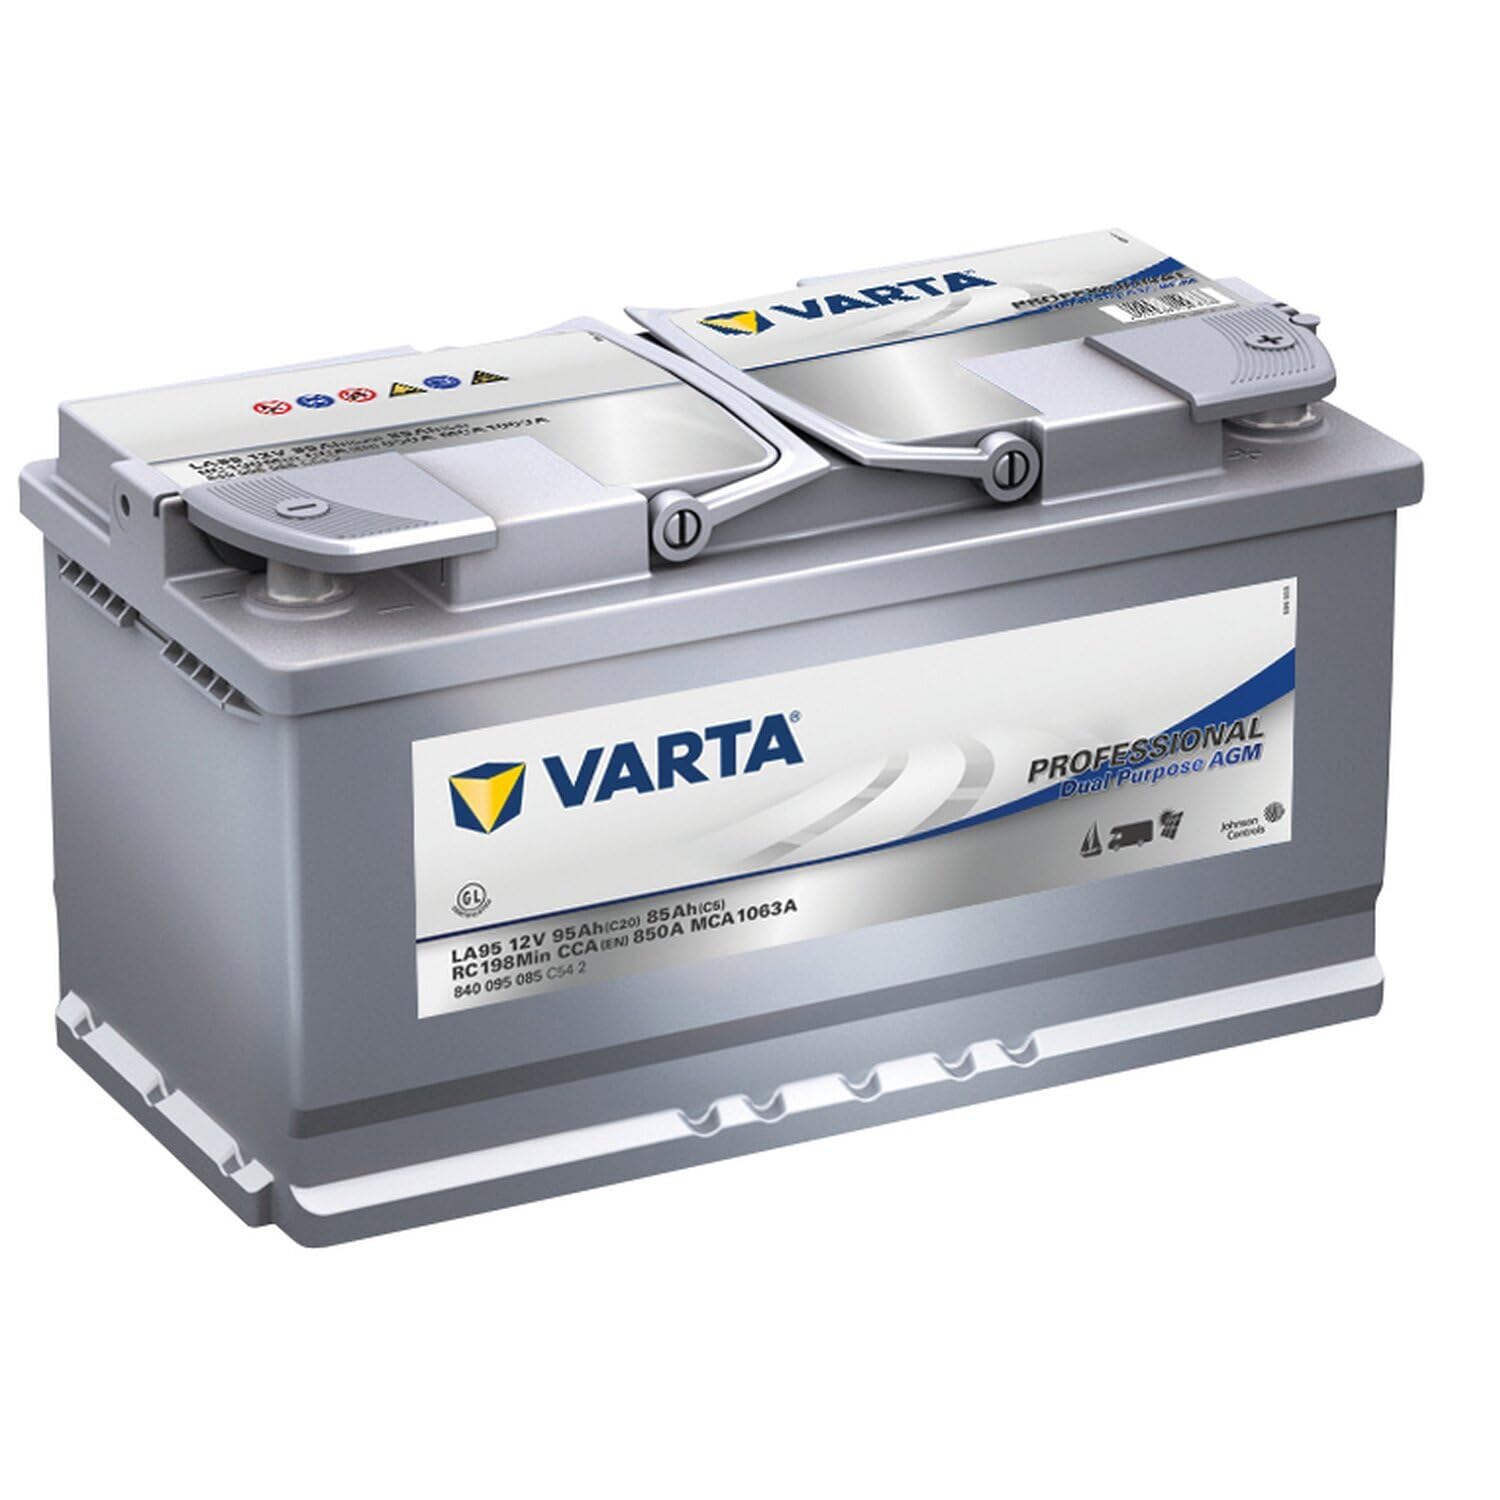 VARTA Professional Dual Purpose AGM Batterie für Caravans, Wohnmobile & Boote – 12V 95Ah 850A (LA 95) – Versorgerbatterie & Starterbatterie in einem von Varta